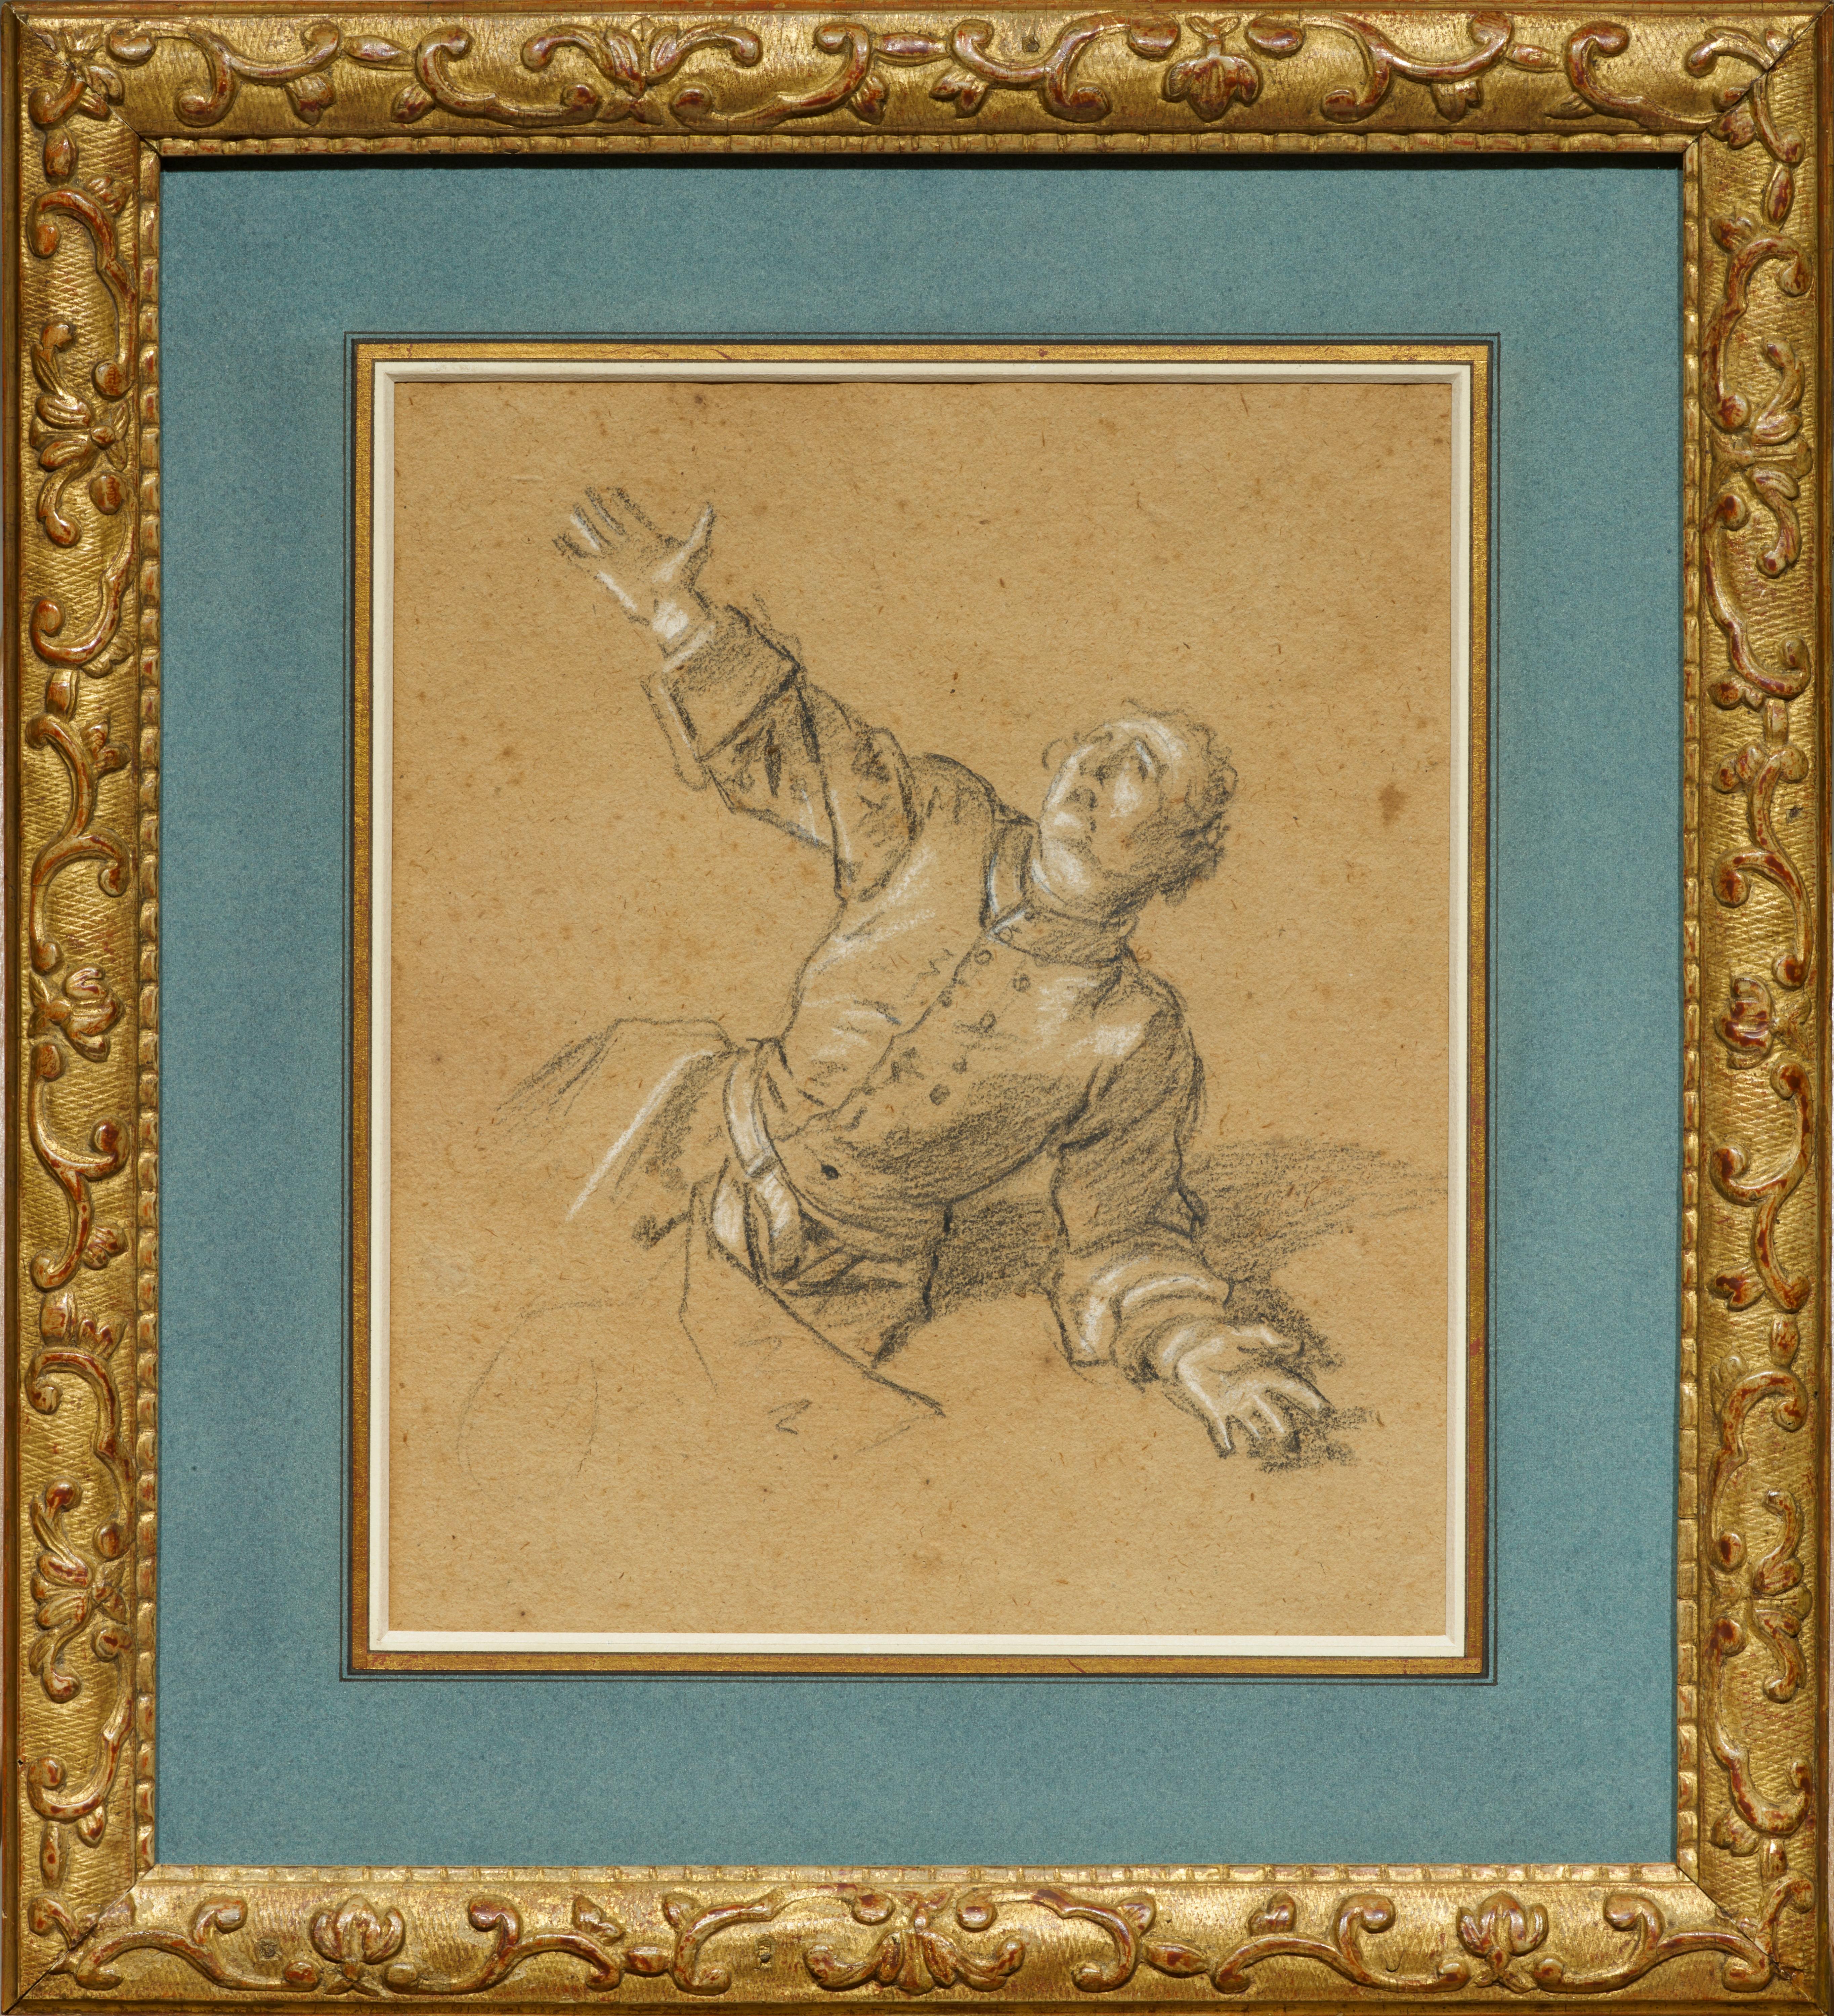 Ce rare dessin de Nattier fait partie d'un ensemble d'études préparatoires exécutées en 1717 pour l'une des premières commandes du peintre, le tableau commandé par le tsar Pierre Ier de Russie pour célébrer sa victoire sur les Suédois à Poltava en